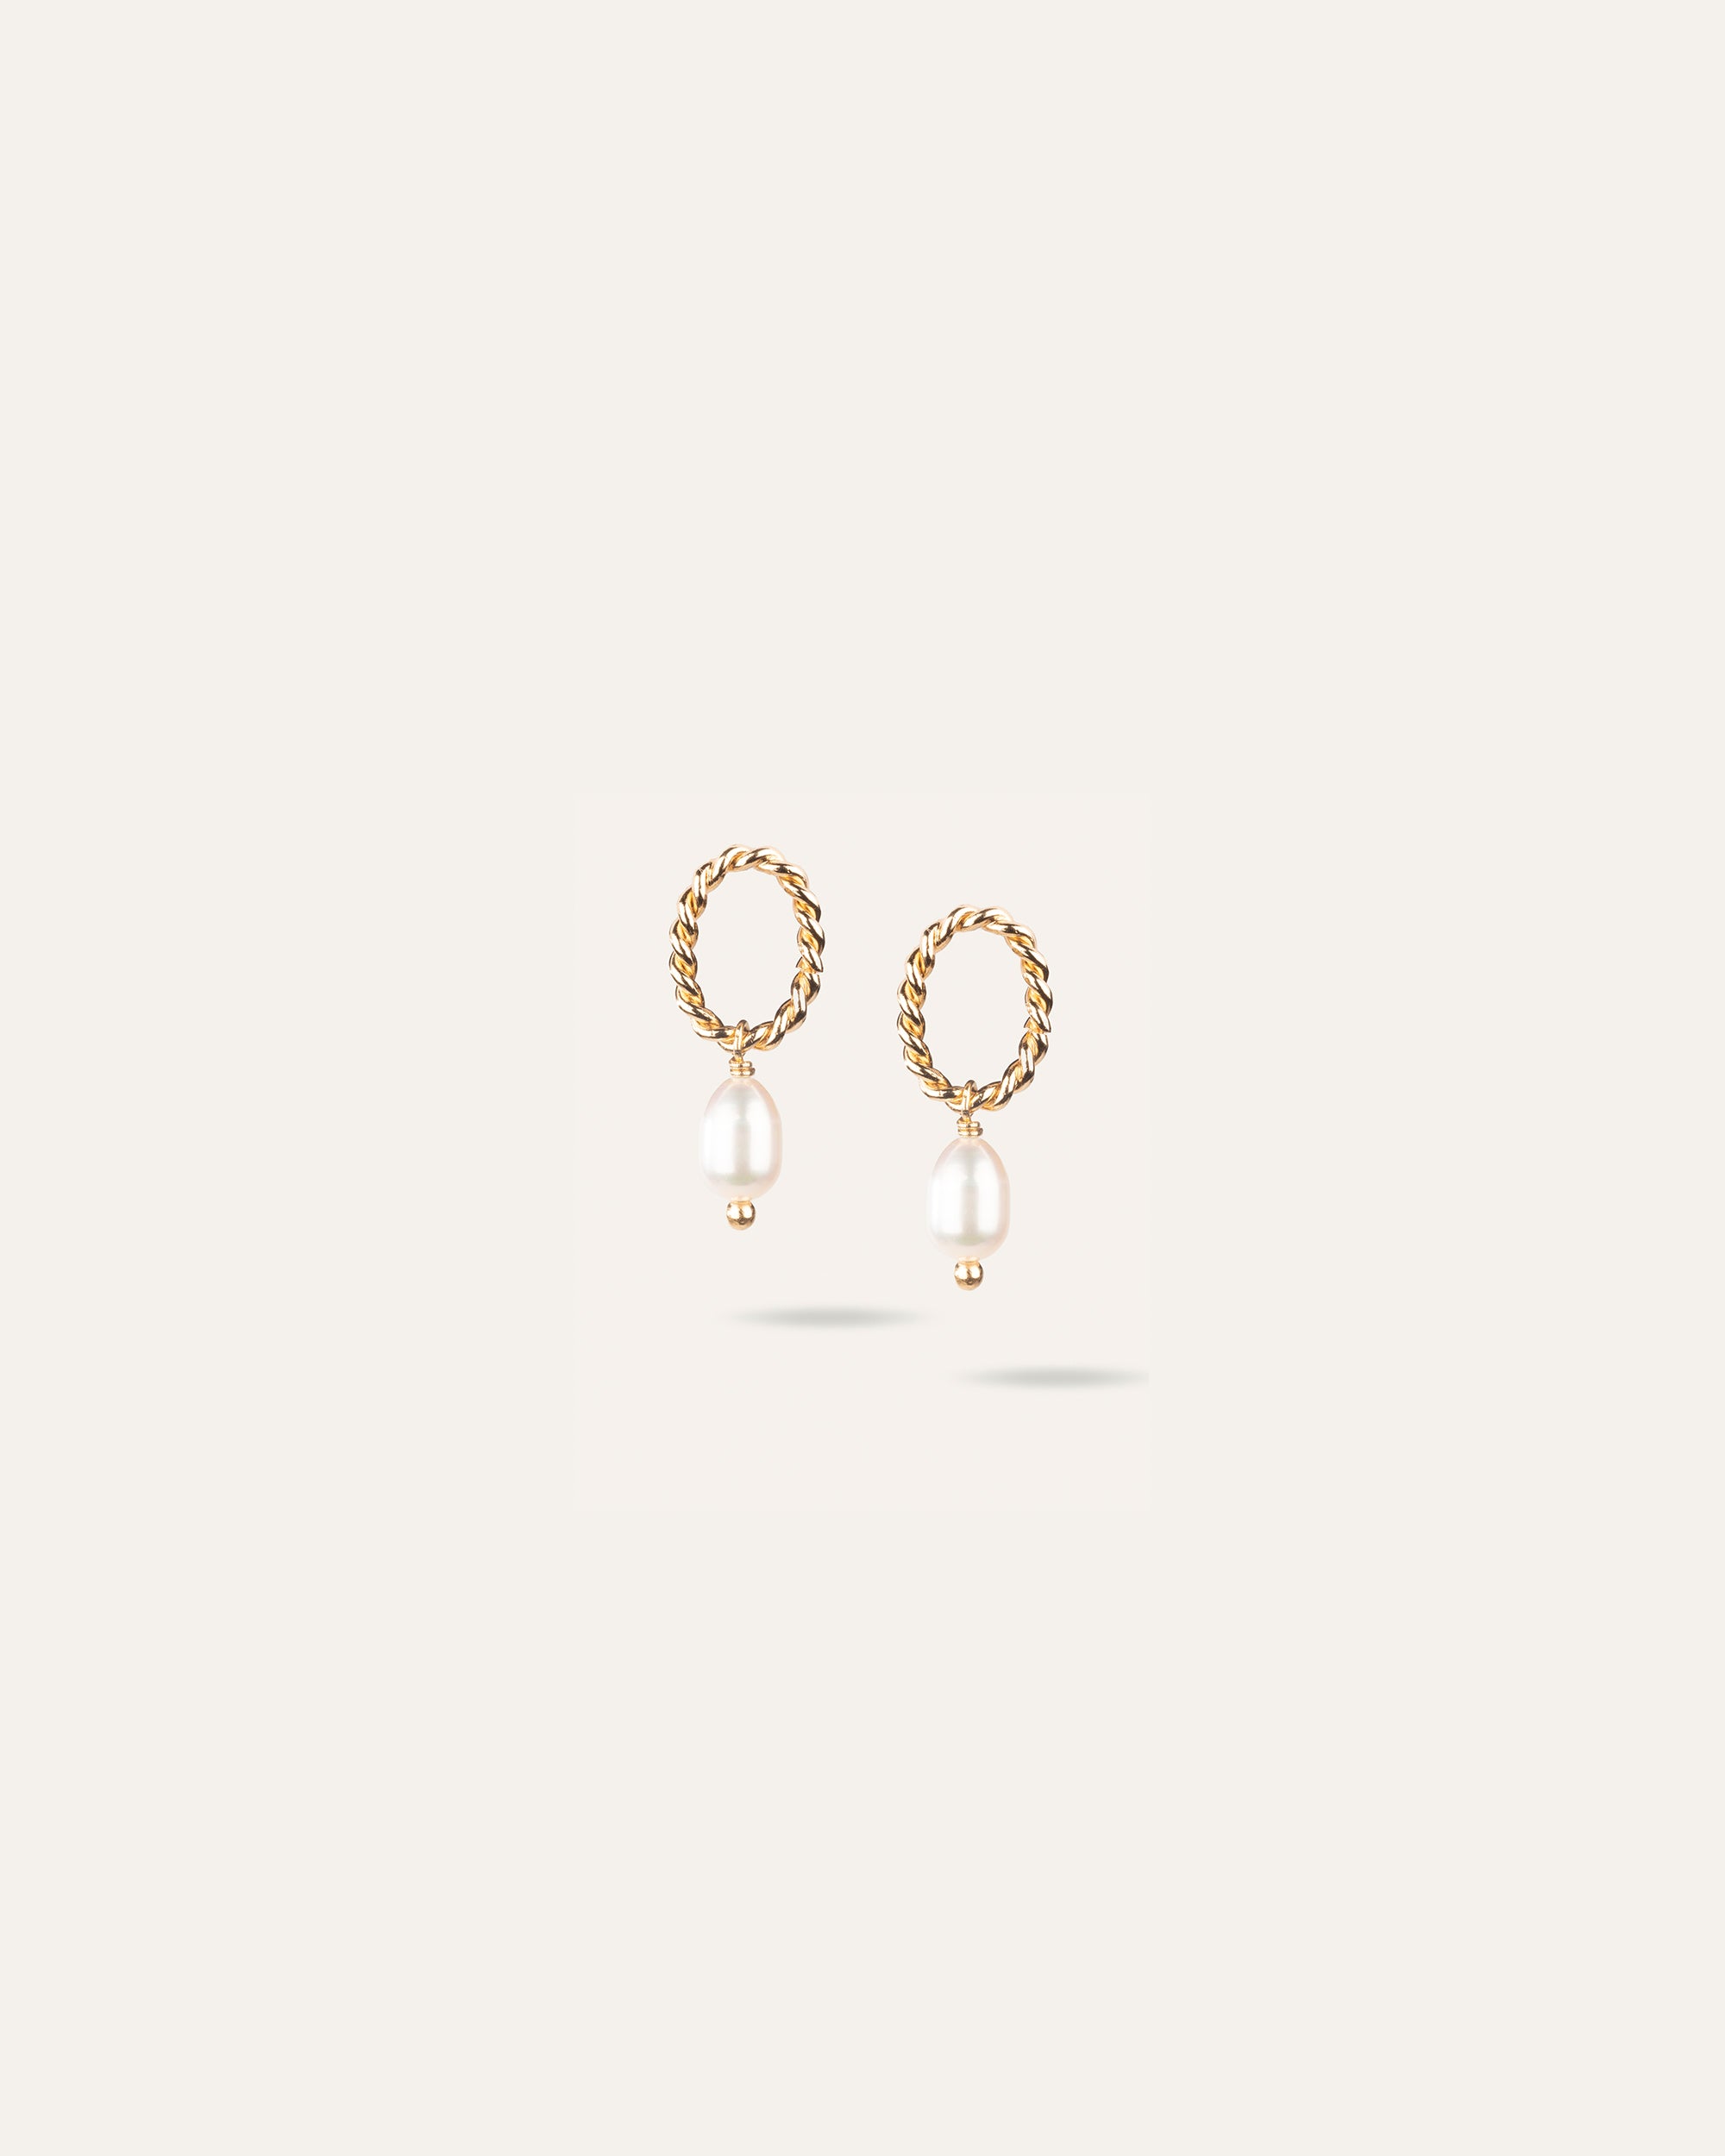 Boucles d'oreilles ovales torsadées associées à une perle de culture ovale en plaqué or 3 microns made in France.